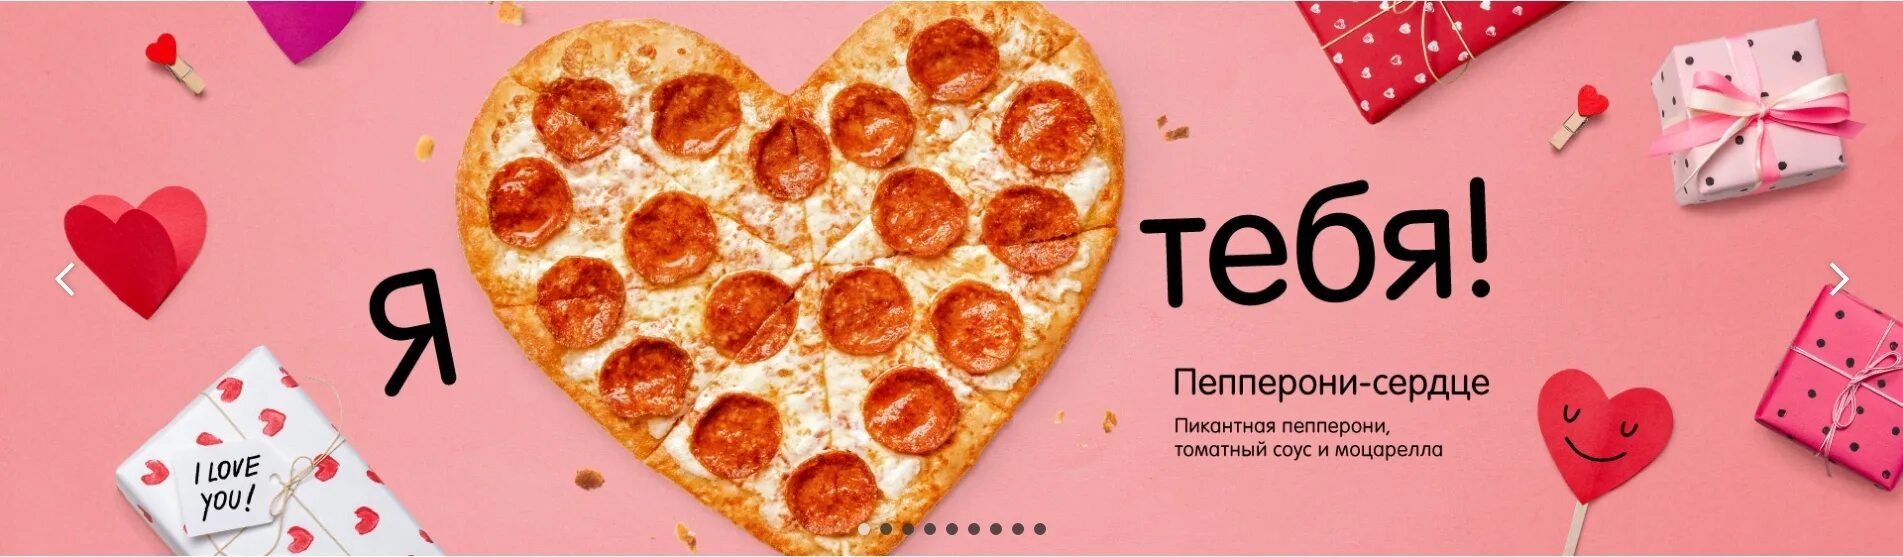 Додо пицца сердце. Додо пицца 14 февраля. Пицца на 14 февраля. Пицца макет. Пицца сердце.